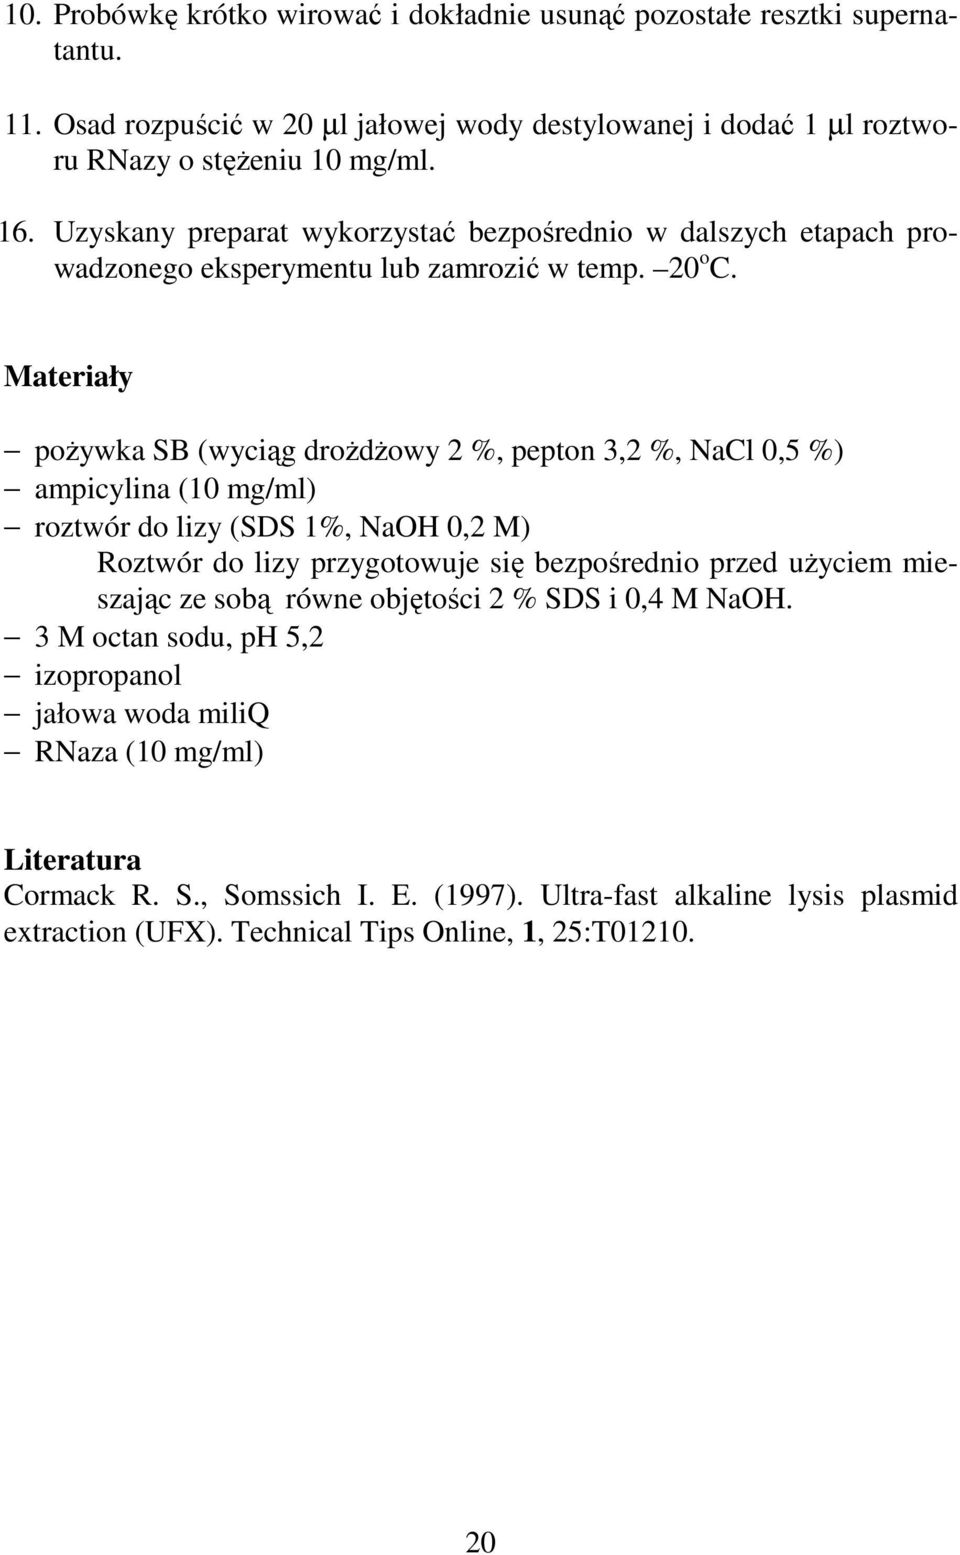 Materiały poŝywka SB (wyciąg droŝdŝowy 2 %, pepton 3,2 %, NaCl 0,5 %) ampicylina (10 mg/ml) roztwór do lizy (SDS 1%, NaOH 0,2 M) Roztwór do lizy przygotowuje się bezpośrednio przed uŝyciem